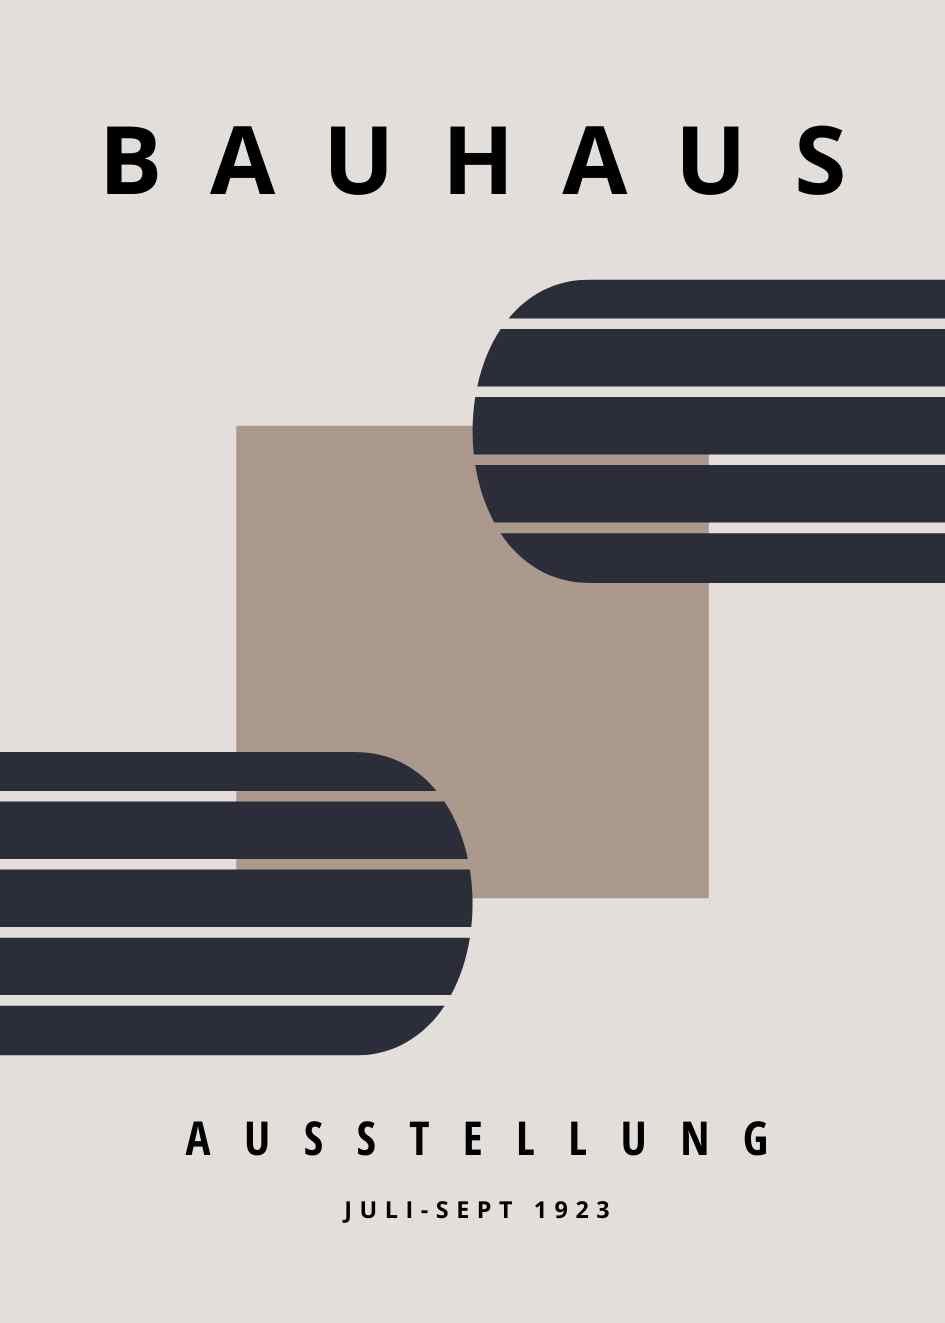 Bauhaus Poster №.85